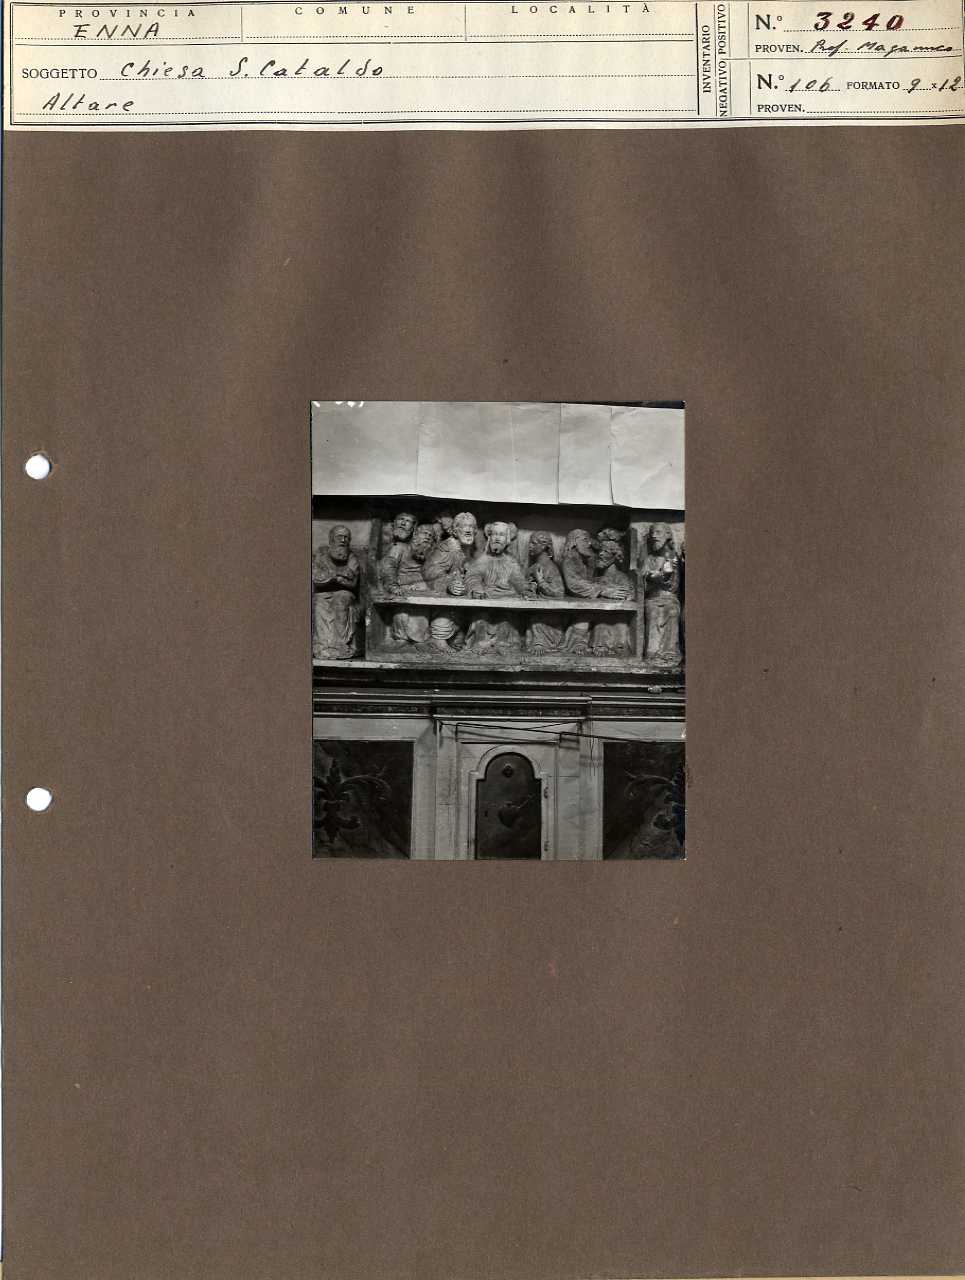 Sicilia - Enna - Architettura religiosa - Chiesa di San Cataldo - Altare (positivo, elemento-parte componente, scheda di supporto) di Anonimo <1901-1950> (secondo quarto XX)